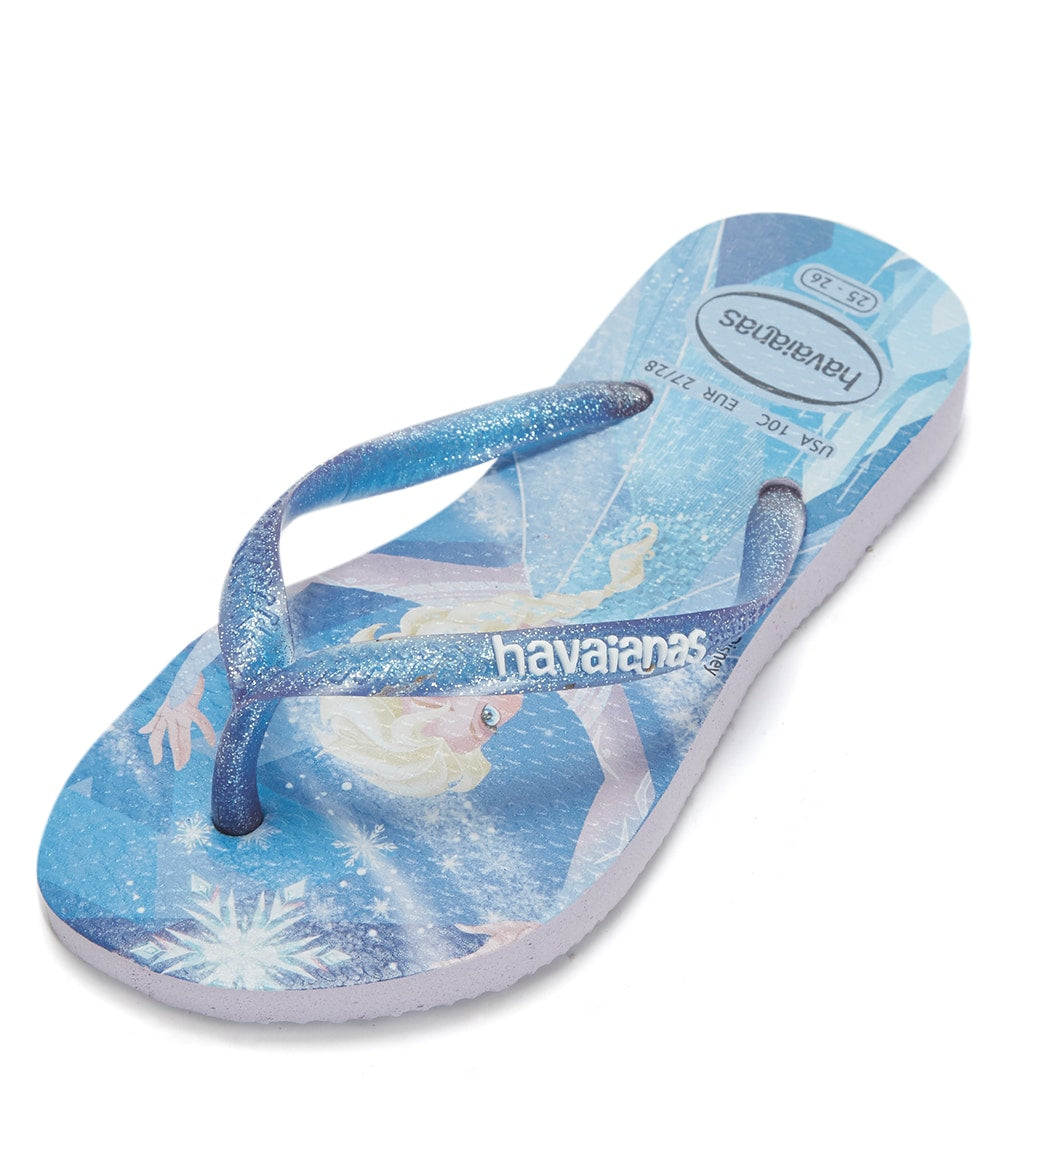 Havaianas Slim Frozen Sandals - Quiet Lilac 27/28 - Swimoutlet.com